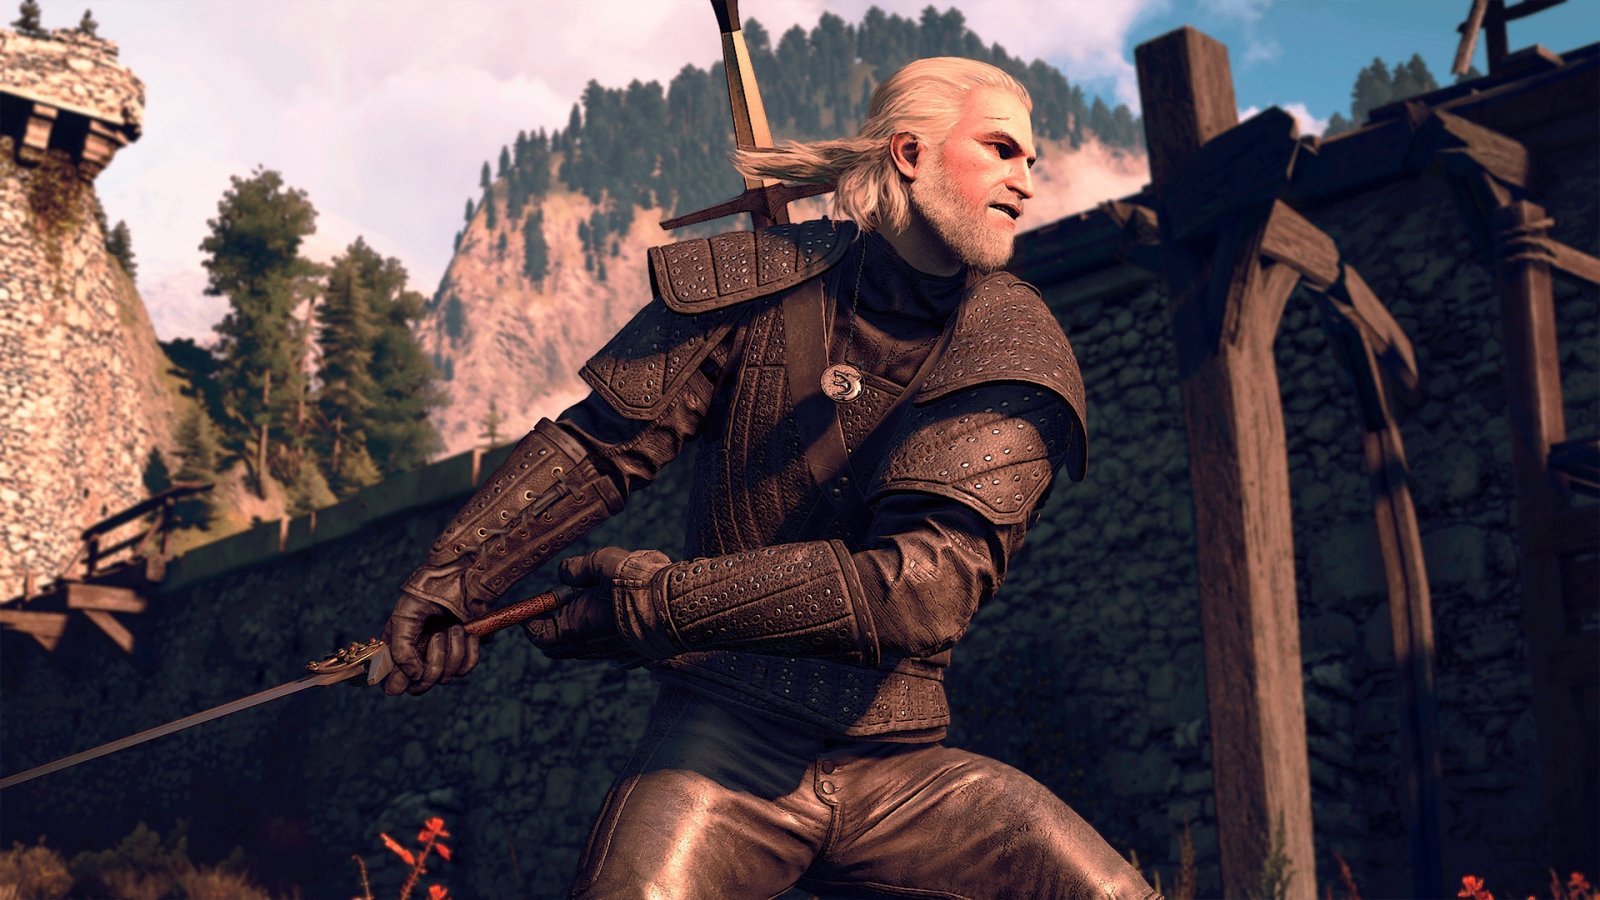 The Witcher 3: dettagli sulla risoluzione delle versioni PS5 e Xbox Series X